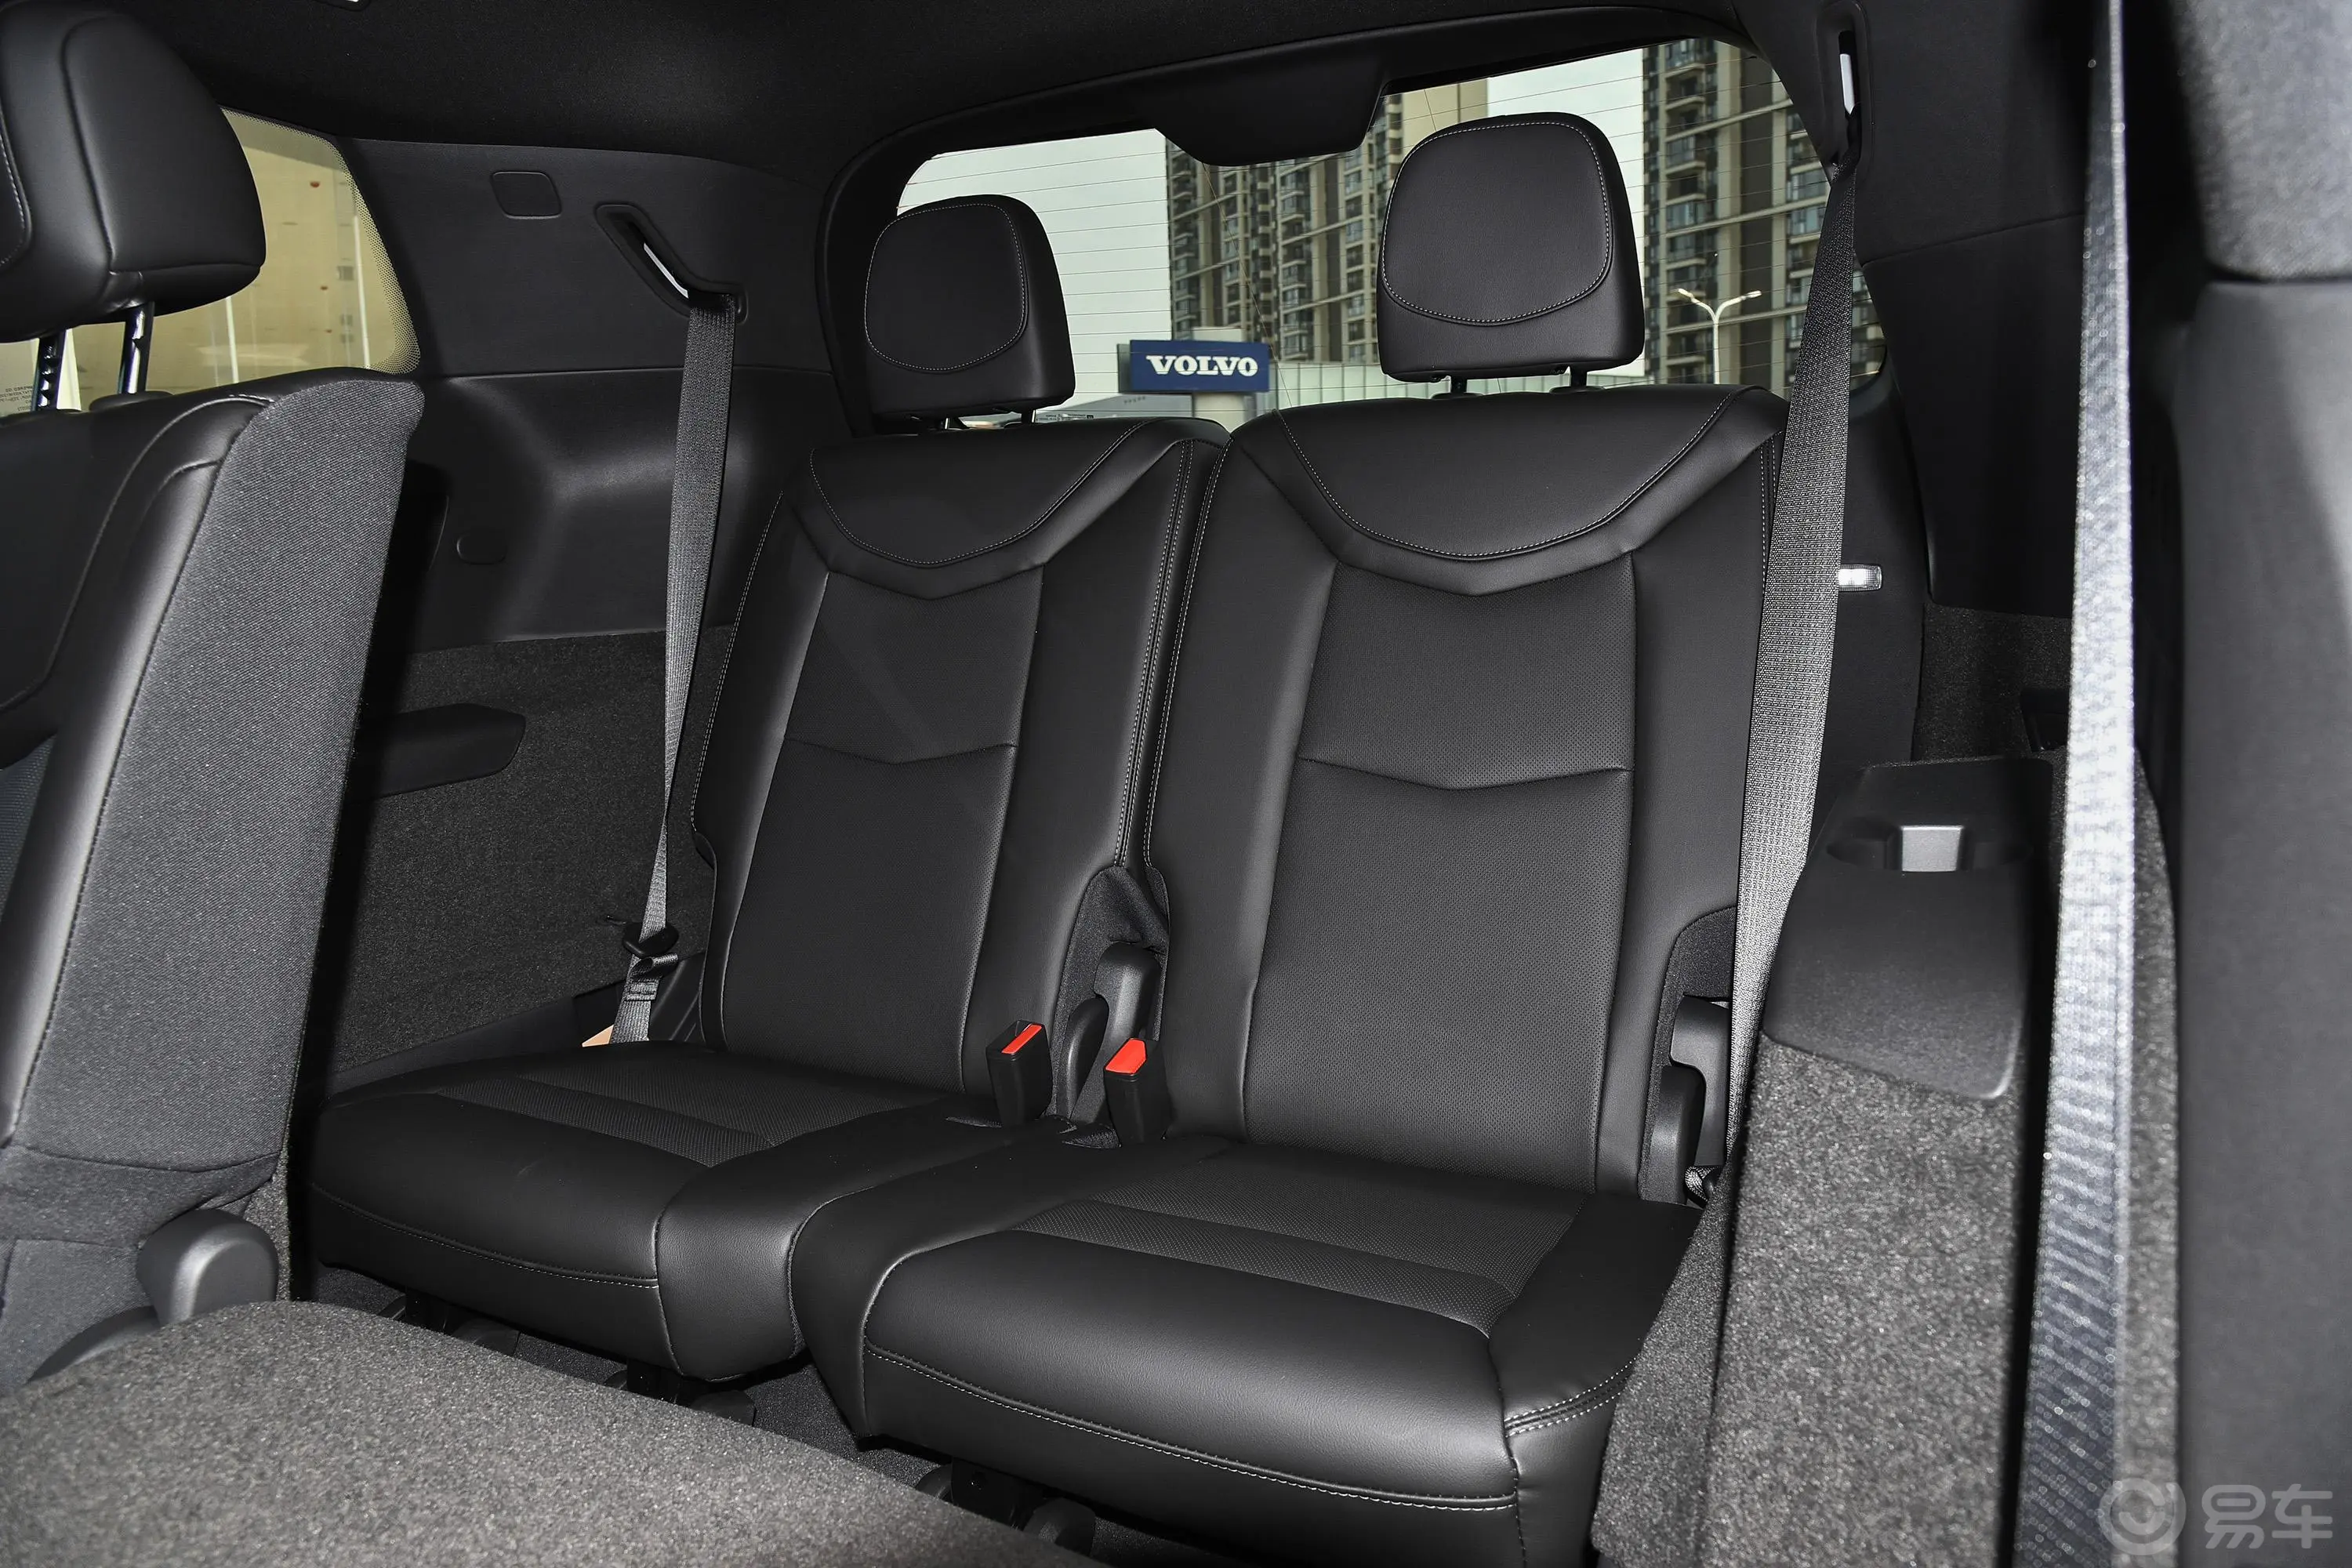 凯迪拉克XT6轻混 120周年纪念版 2.0T 四驱豪华型 7座第三排座椅